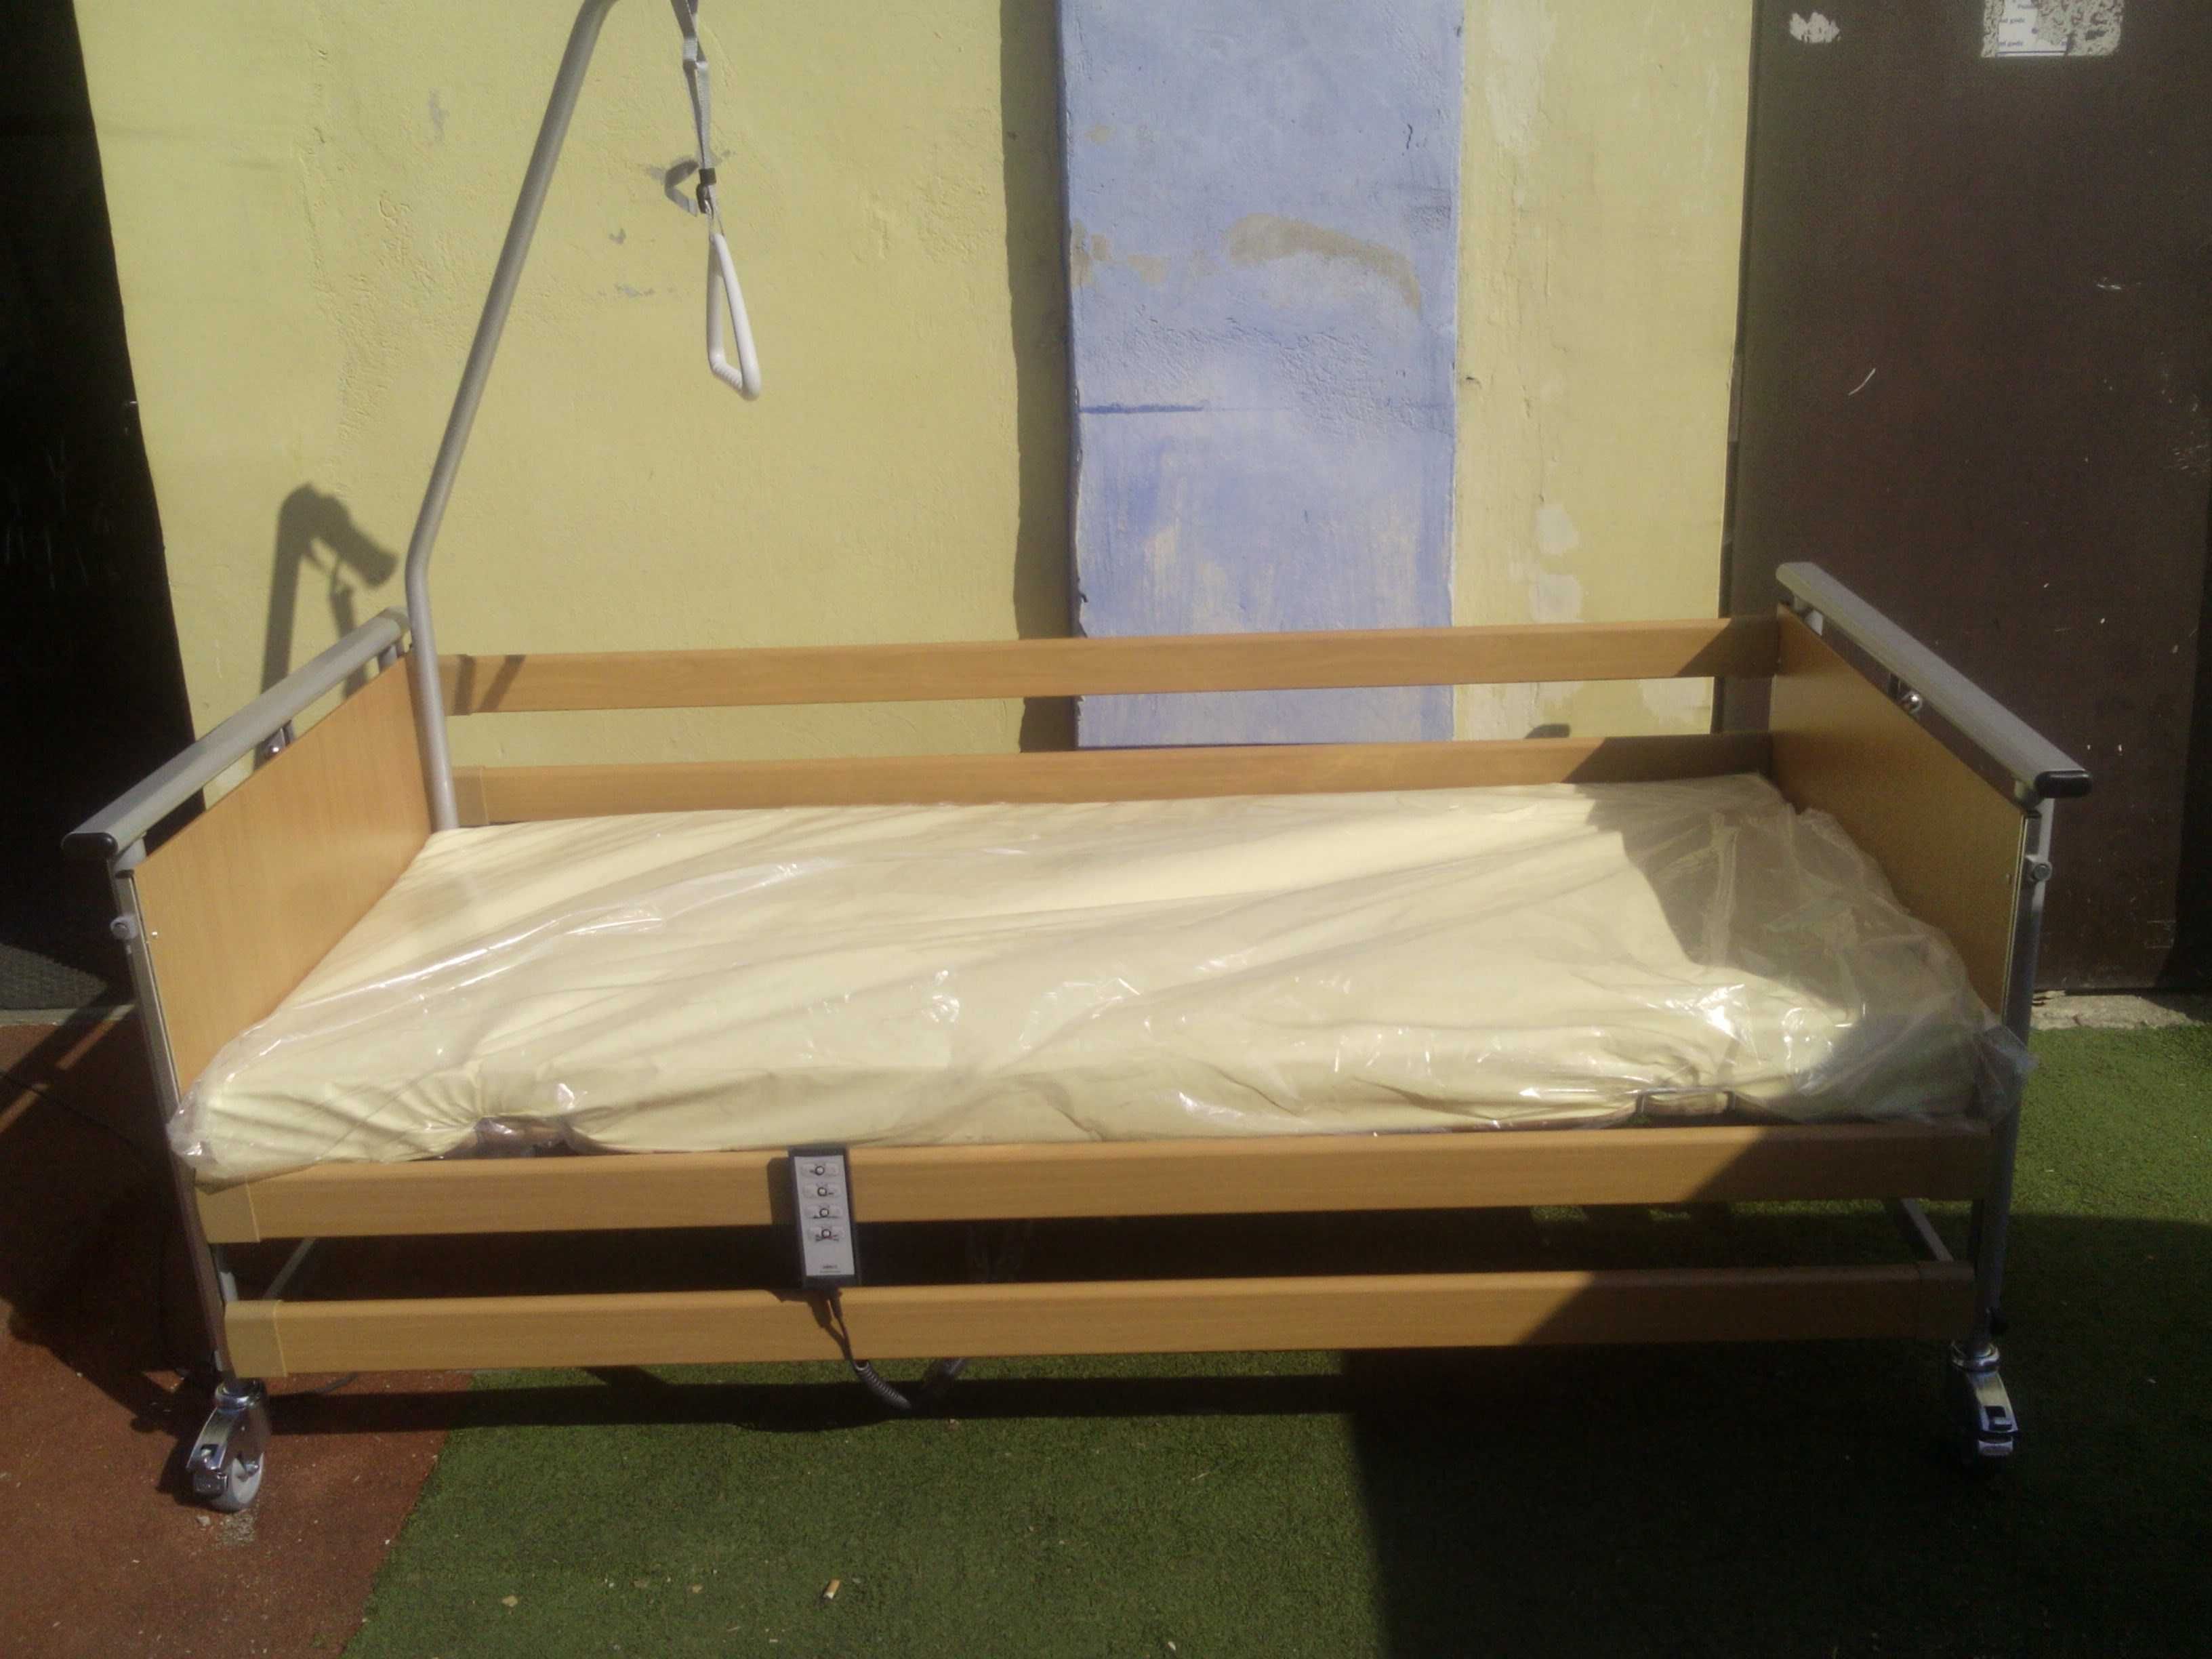 Nowe łóżko rehabilitacyjne PB 325, dostawa oraz montaż Tomaszów!